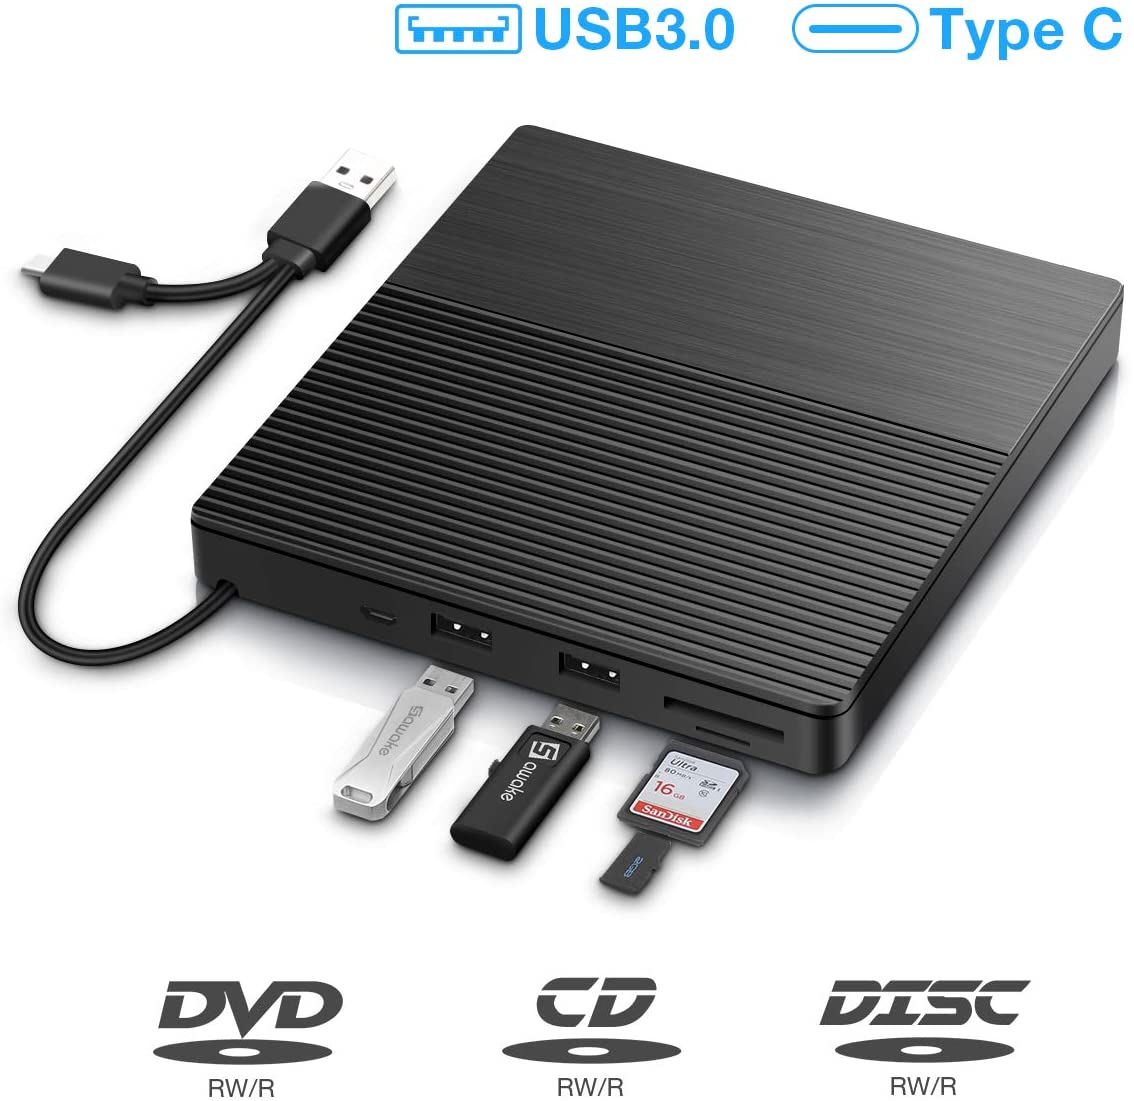 Lecteur CD/DVD Externe, Graveur DVD/CD Externe USB 3.0 et Type-C